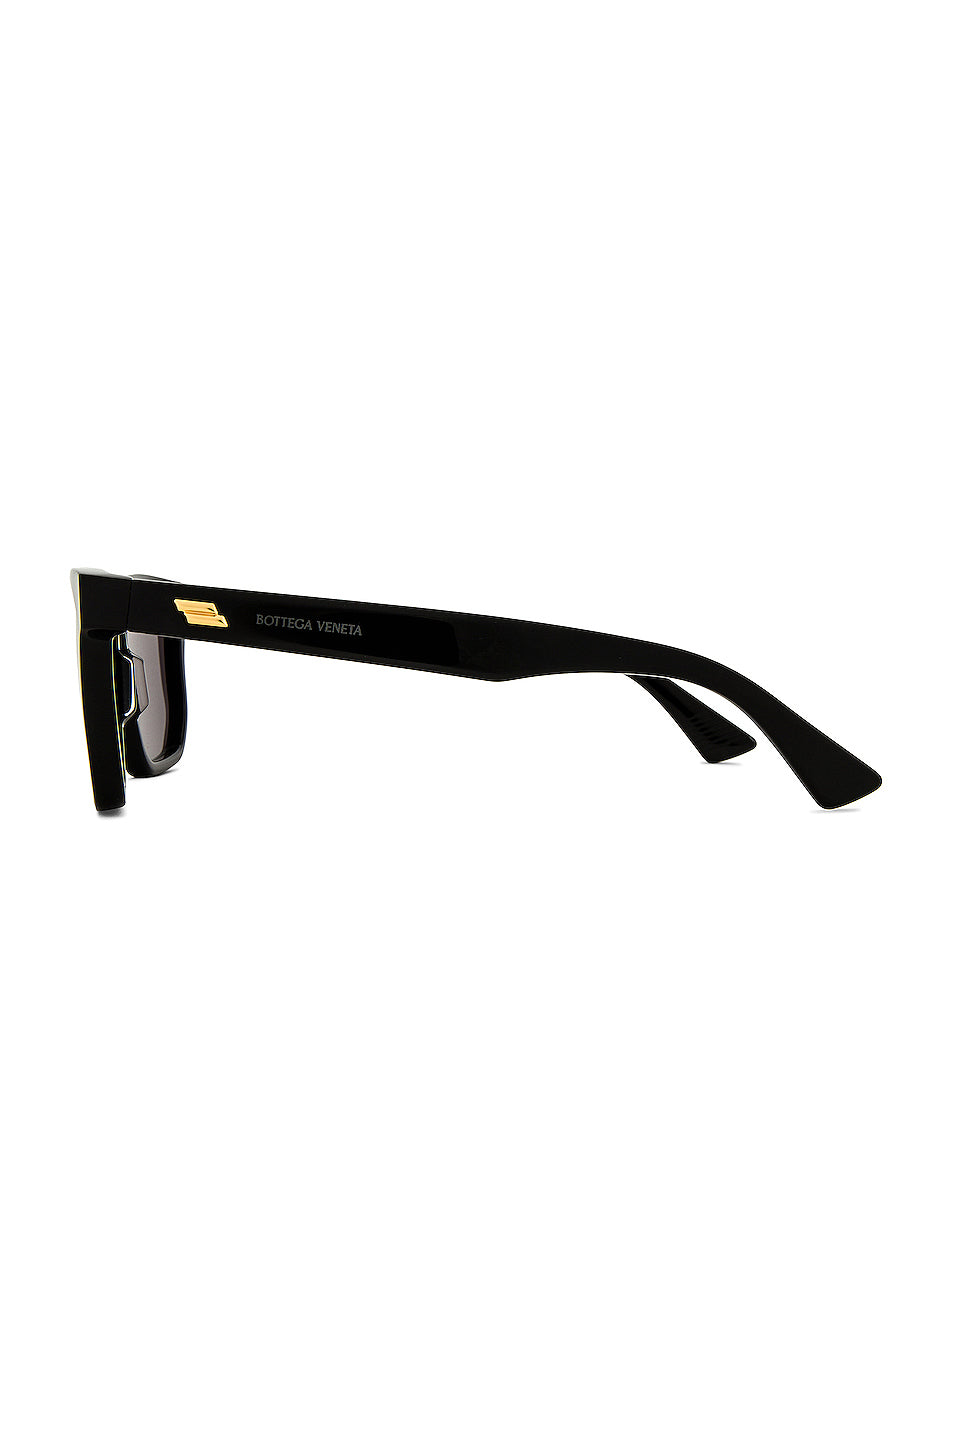 BV1033S Sunglasses